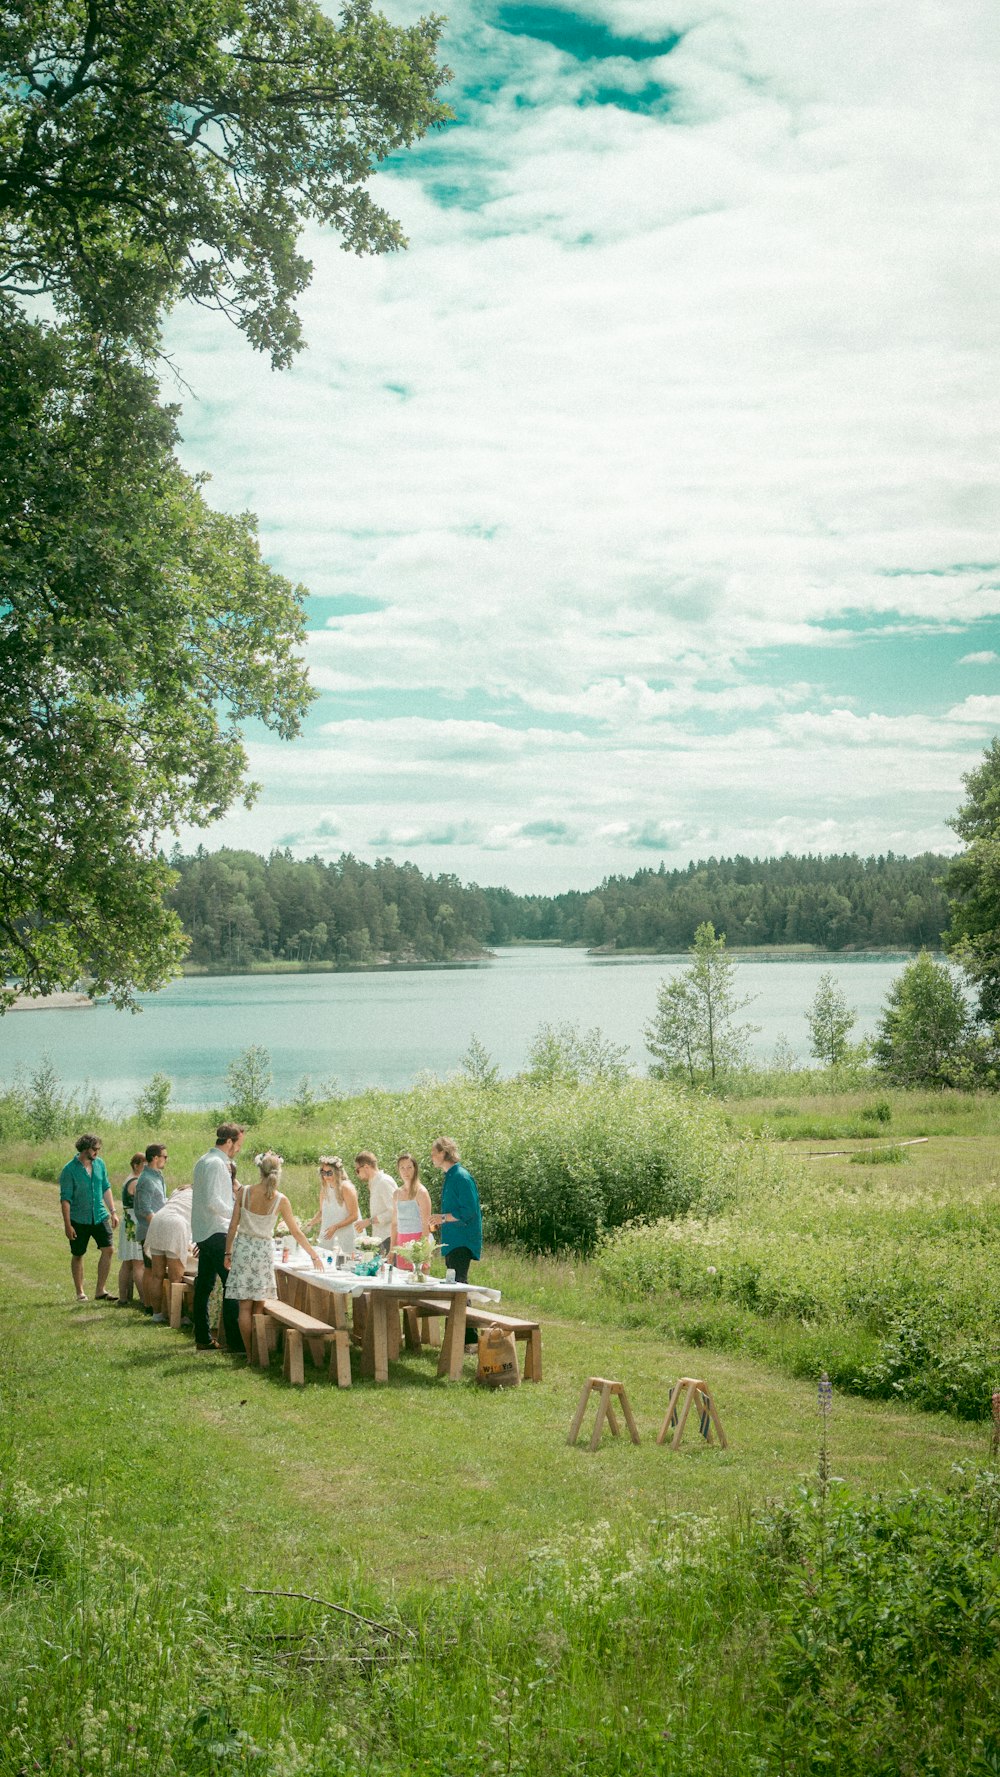 Menschen, die tagsüber auf einer braunen Holzbank in der Nähe des Sees sitzen